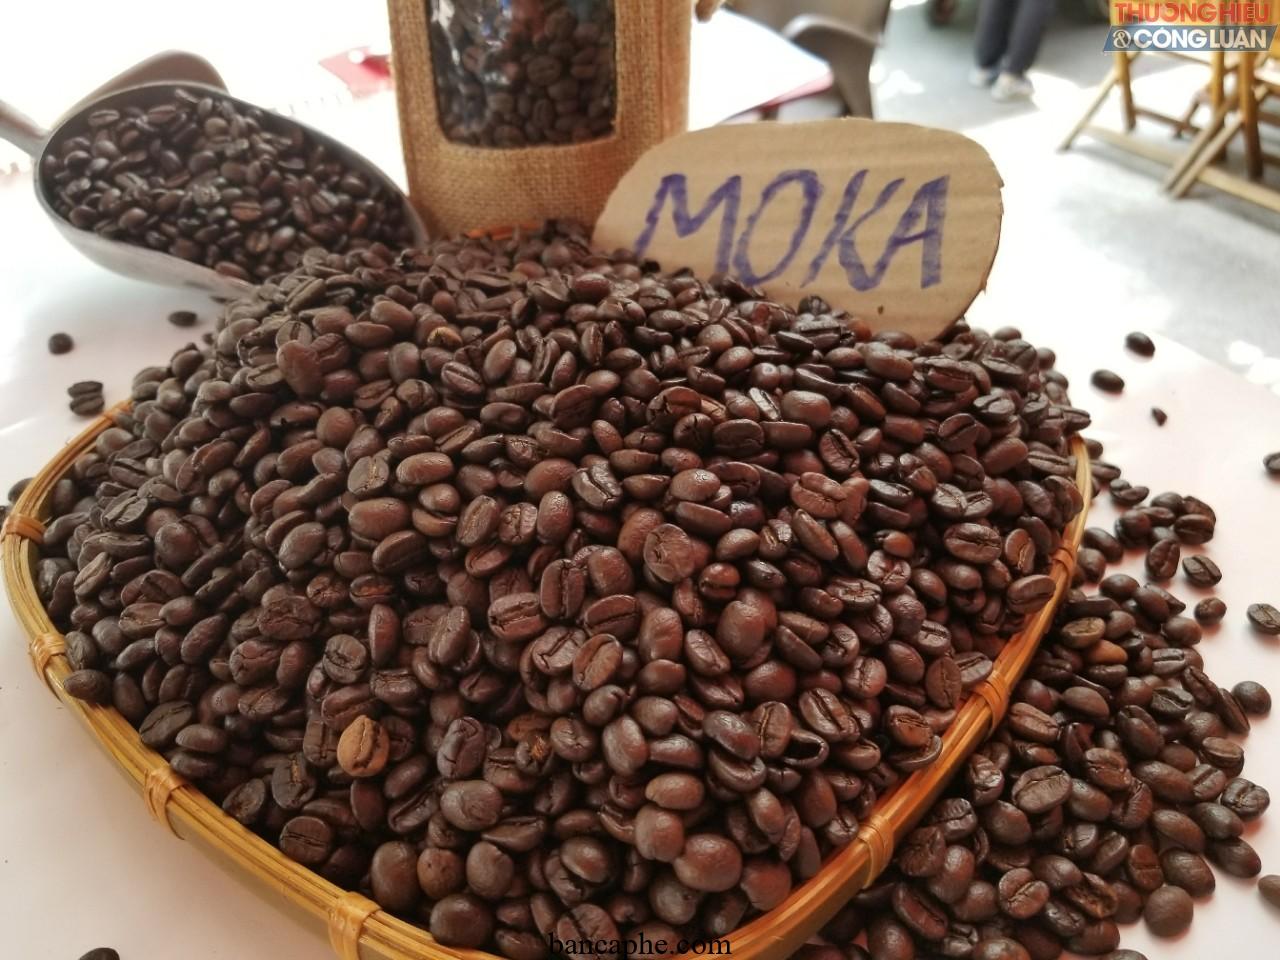 Bí mật của loại cà phê mới năm 2024: Từ những hạt cà phê được trồng và chế biến theo phương pháp truyền thống của người Việt Nam